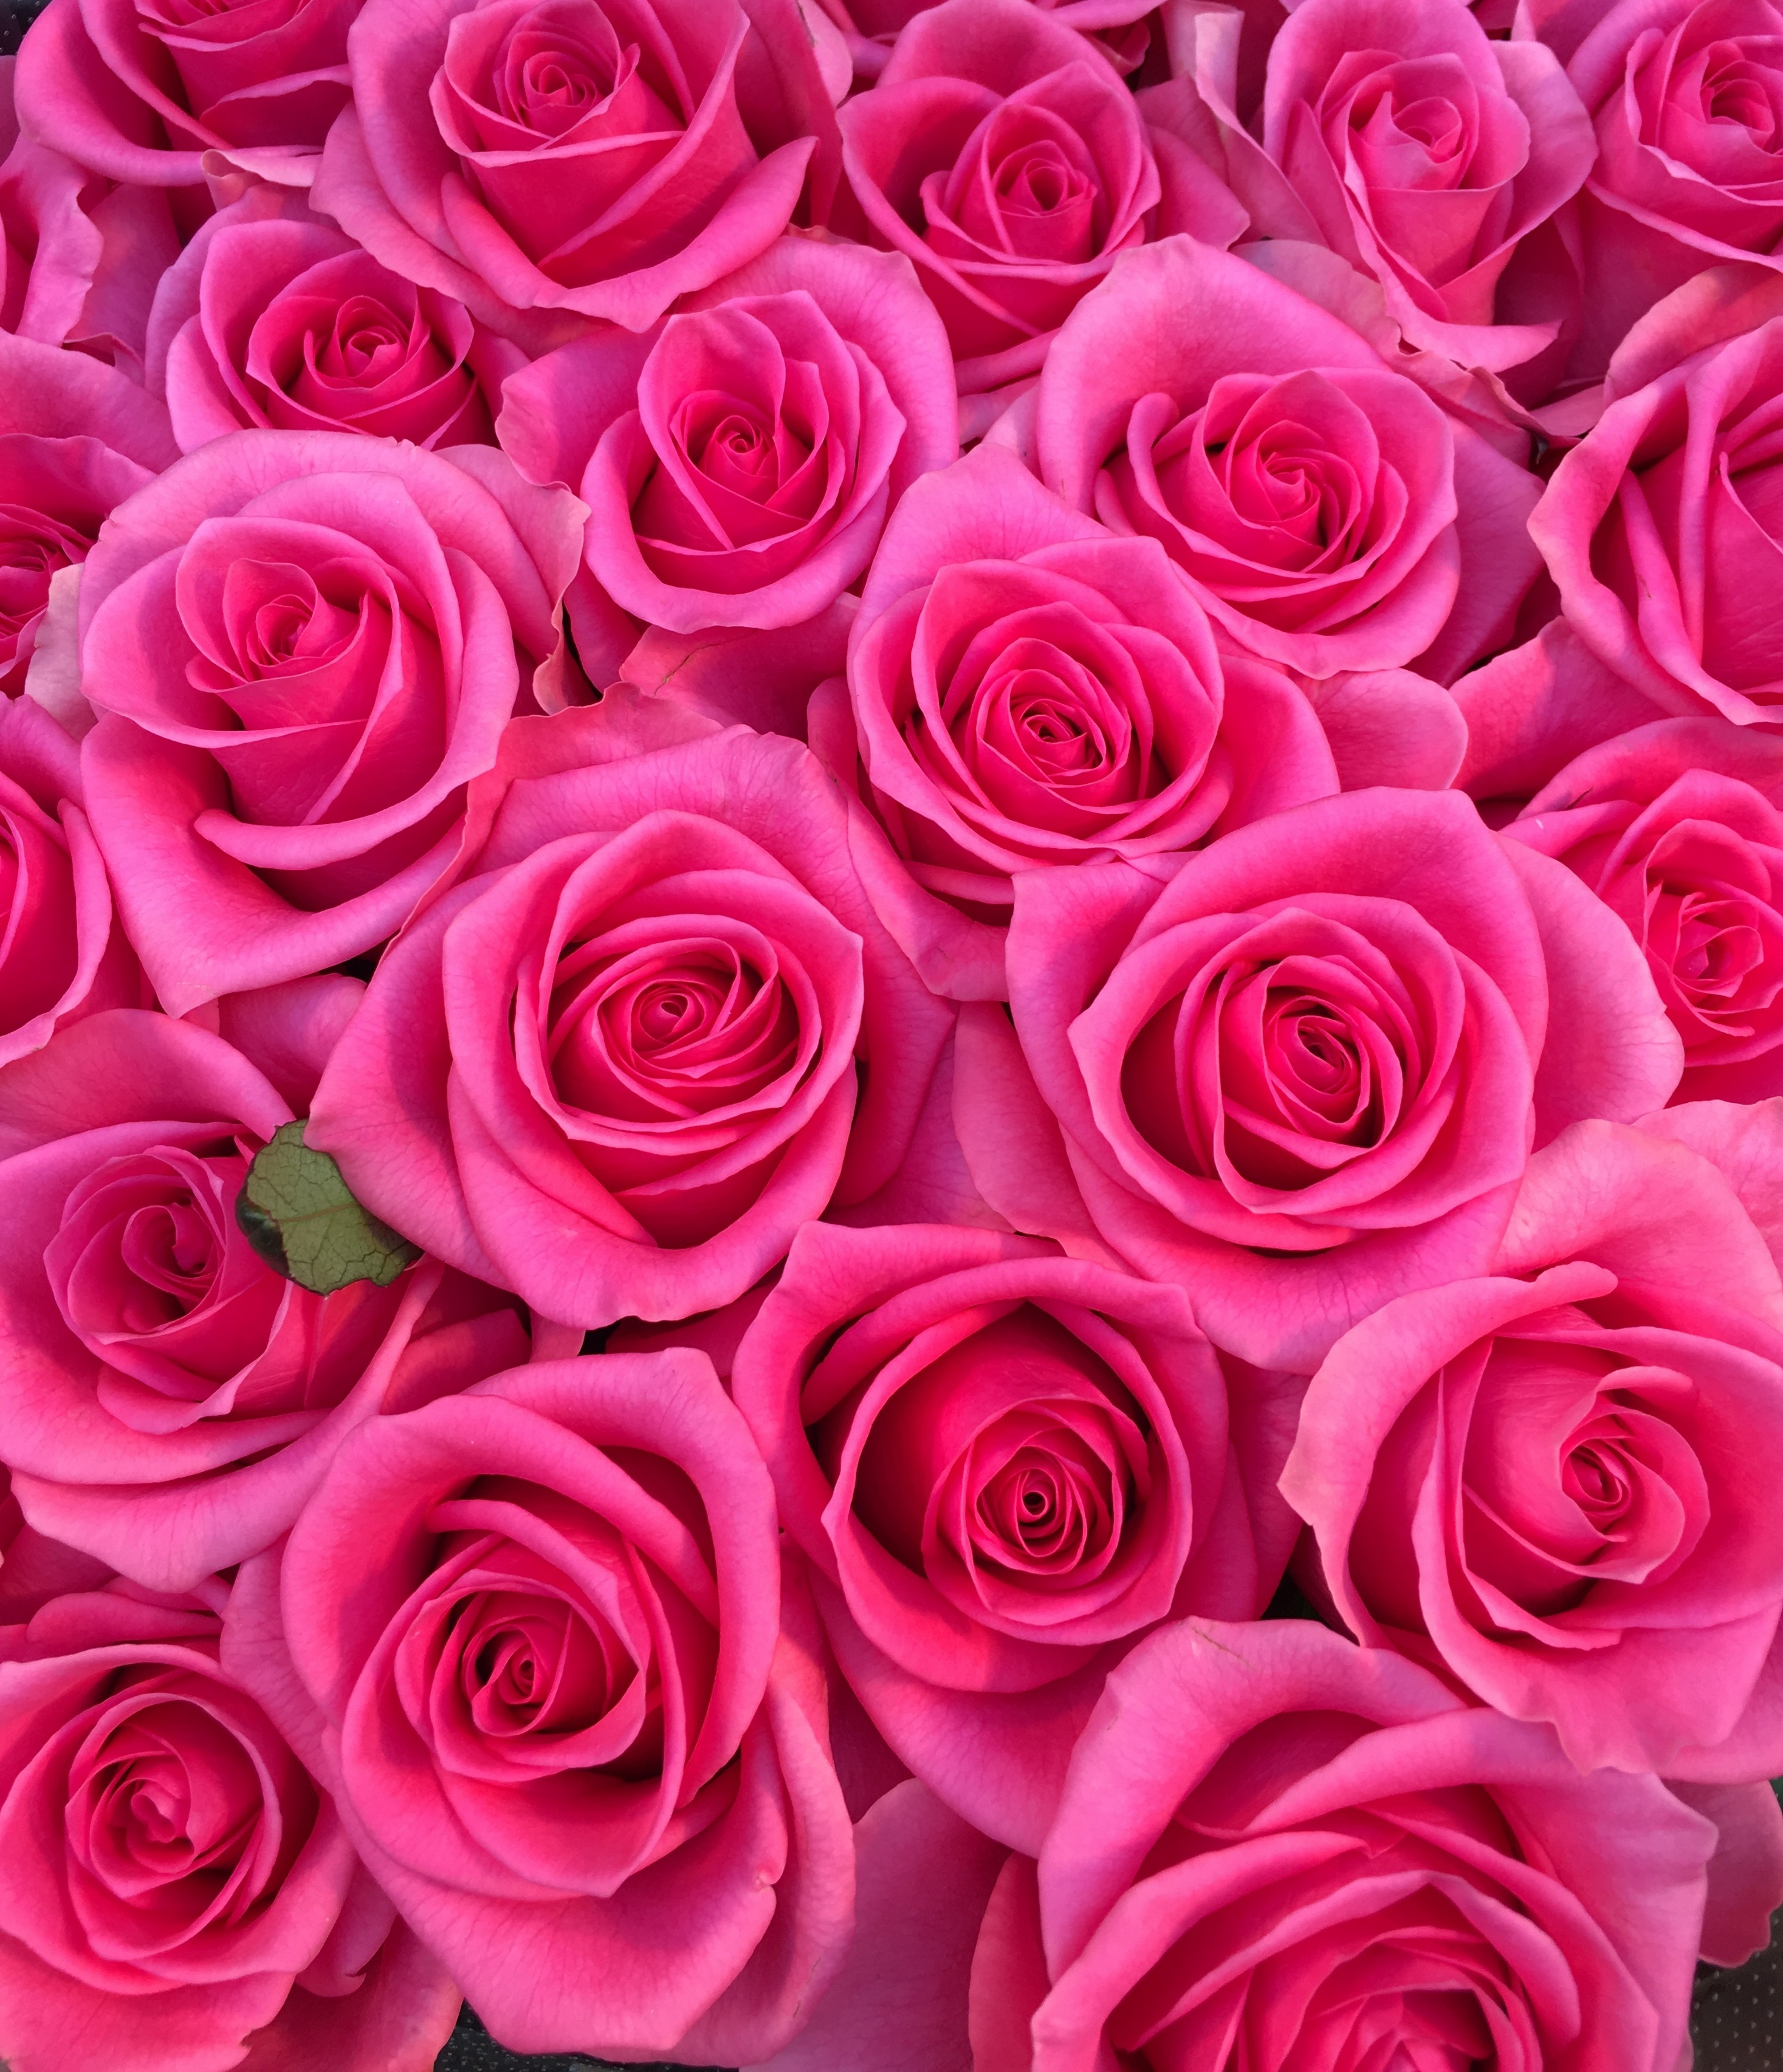 花屋 Hanaya １００本バラ 中輪ピンクバラ プロポーズの花束 記念日の花束 結婚記念日の花束 特別な花束 １００本 １０８本 バラ ローズ 薔薇 Rose Rose Roses Roses